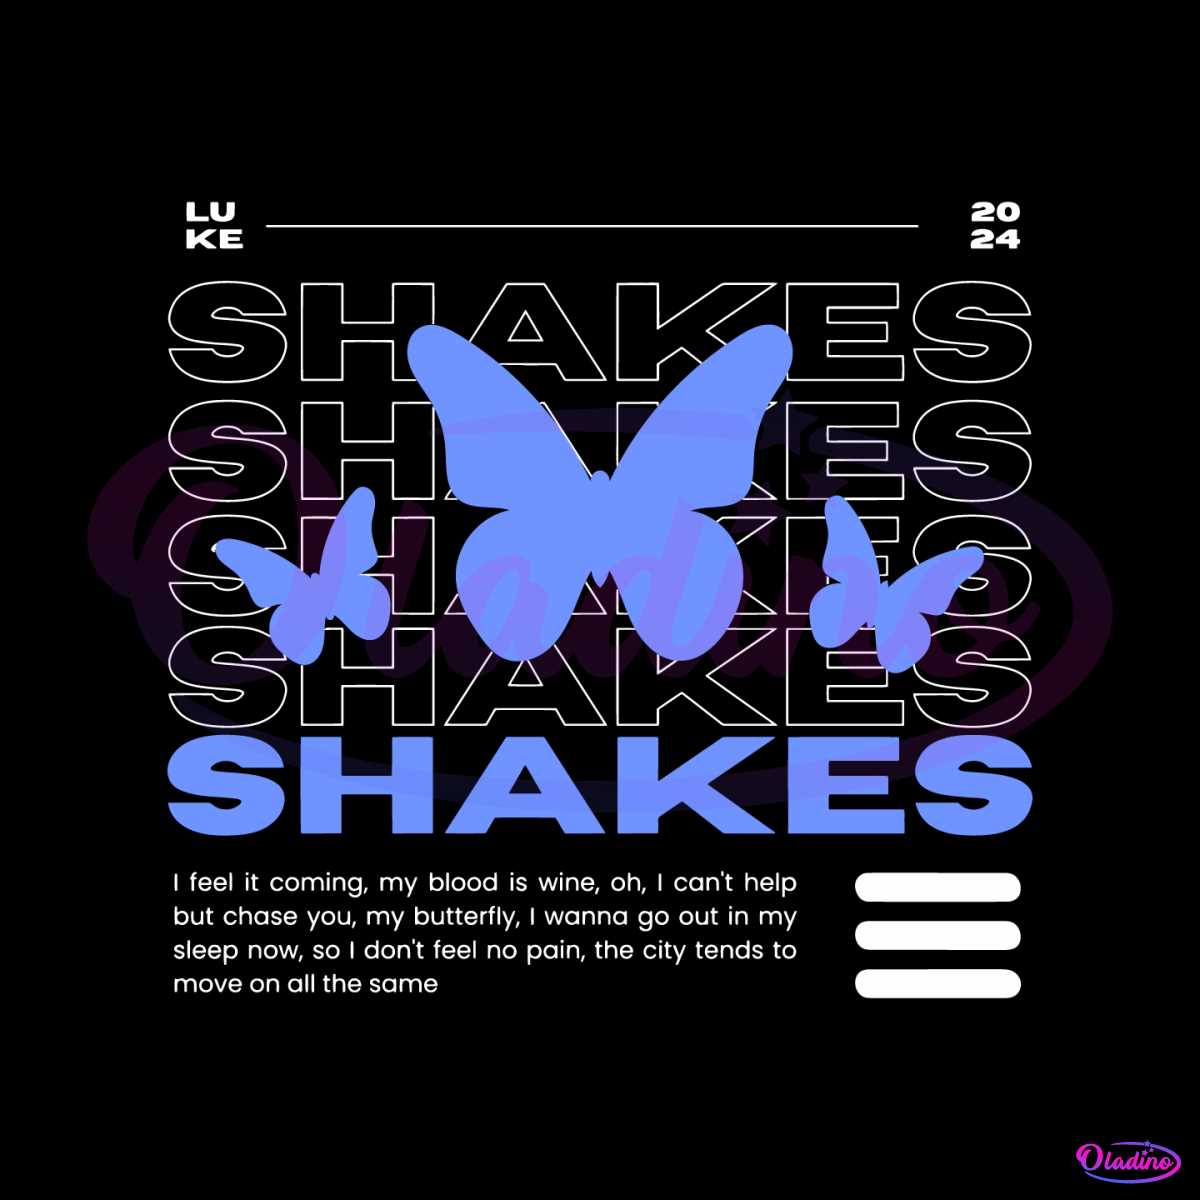 shakes-luke-hemmings-2024-song-svg